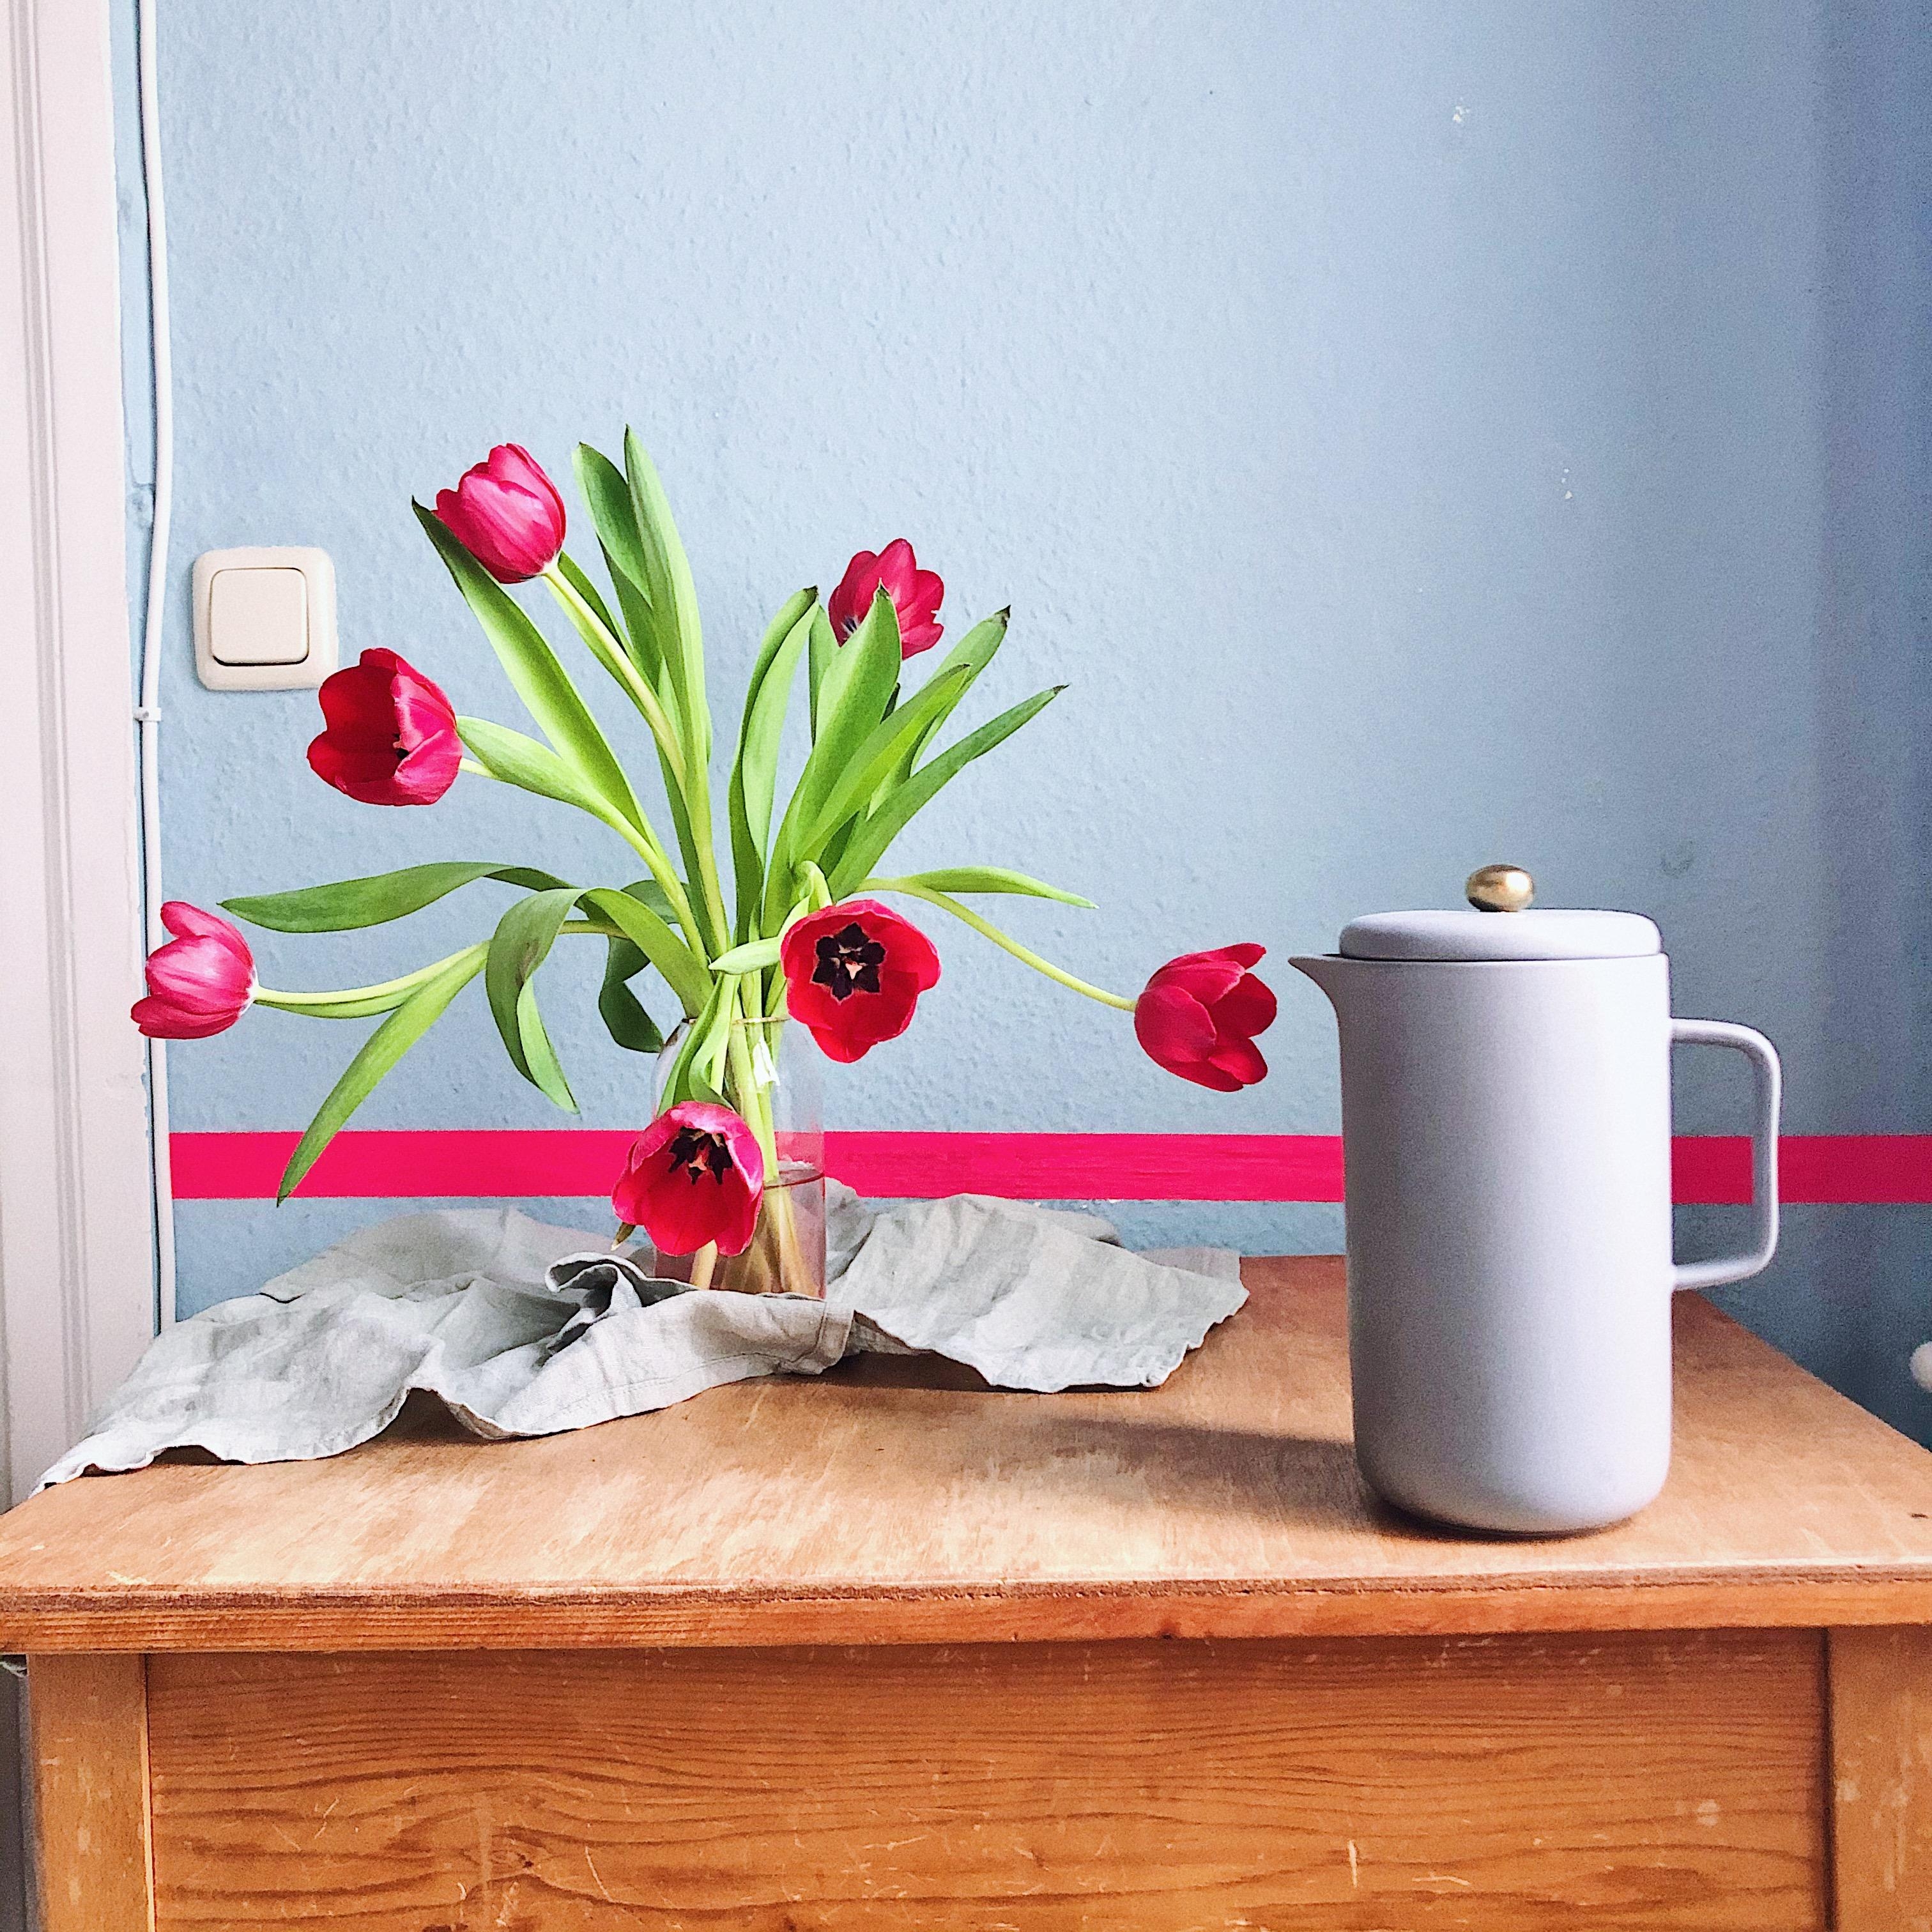 Eskalierende Tulpen sind einfach das Beste 🌷 
#Tulpen #Holztisch #Frenchpress